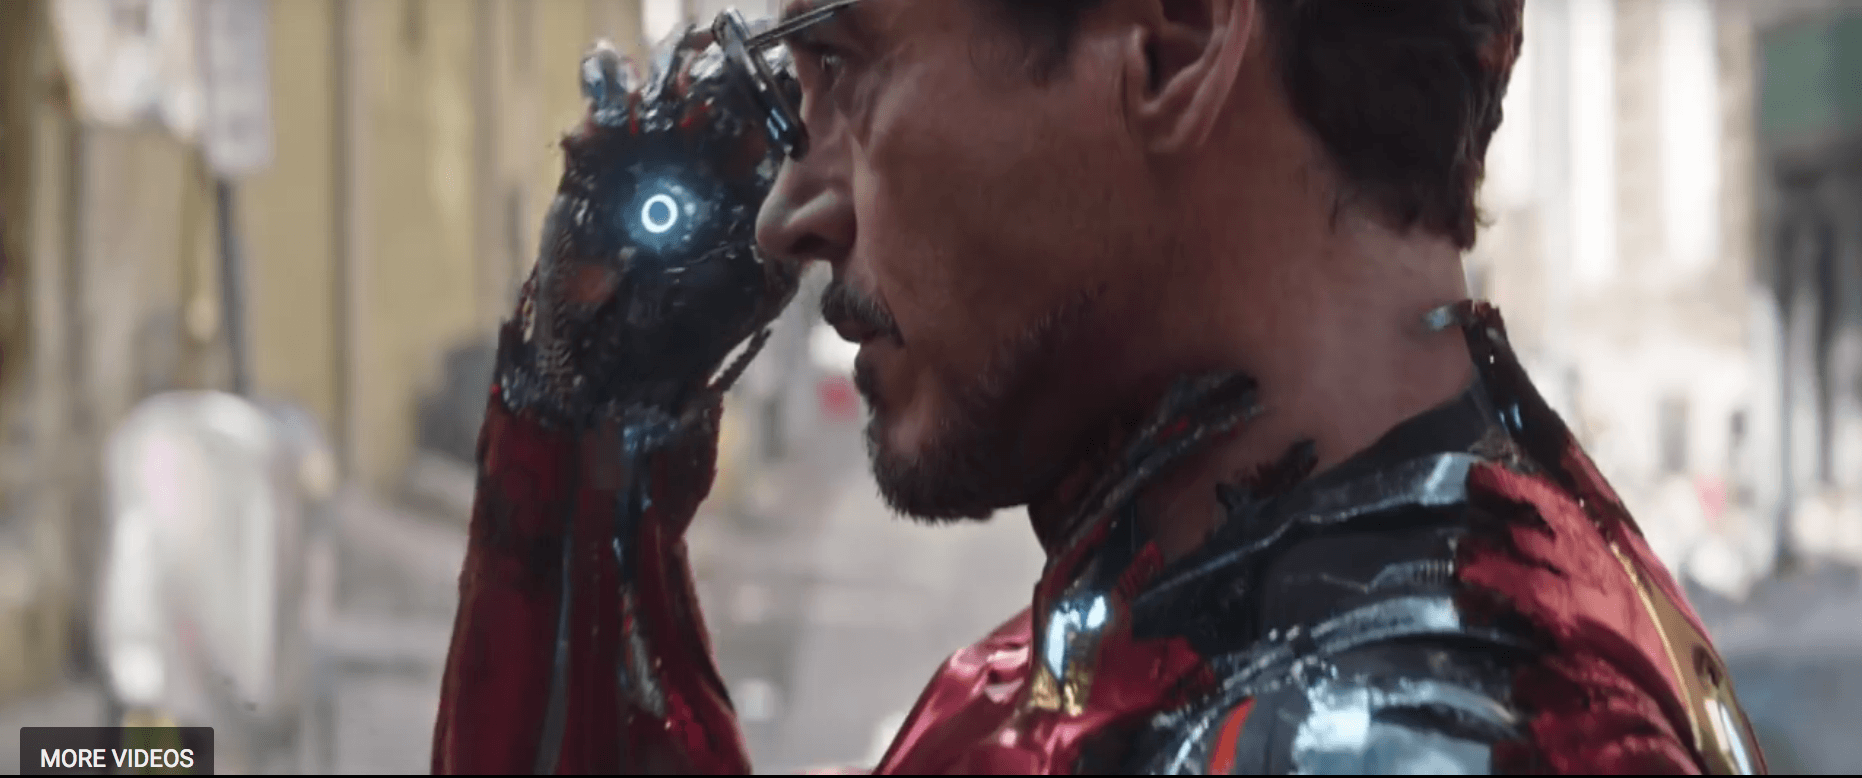 Avengers: Infinity War Man Bleeding Edge Armor Revealed. Den